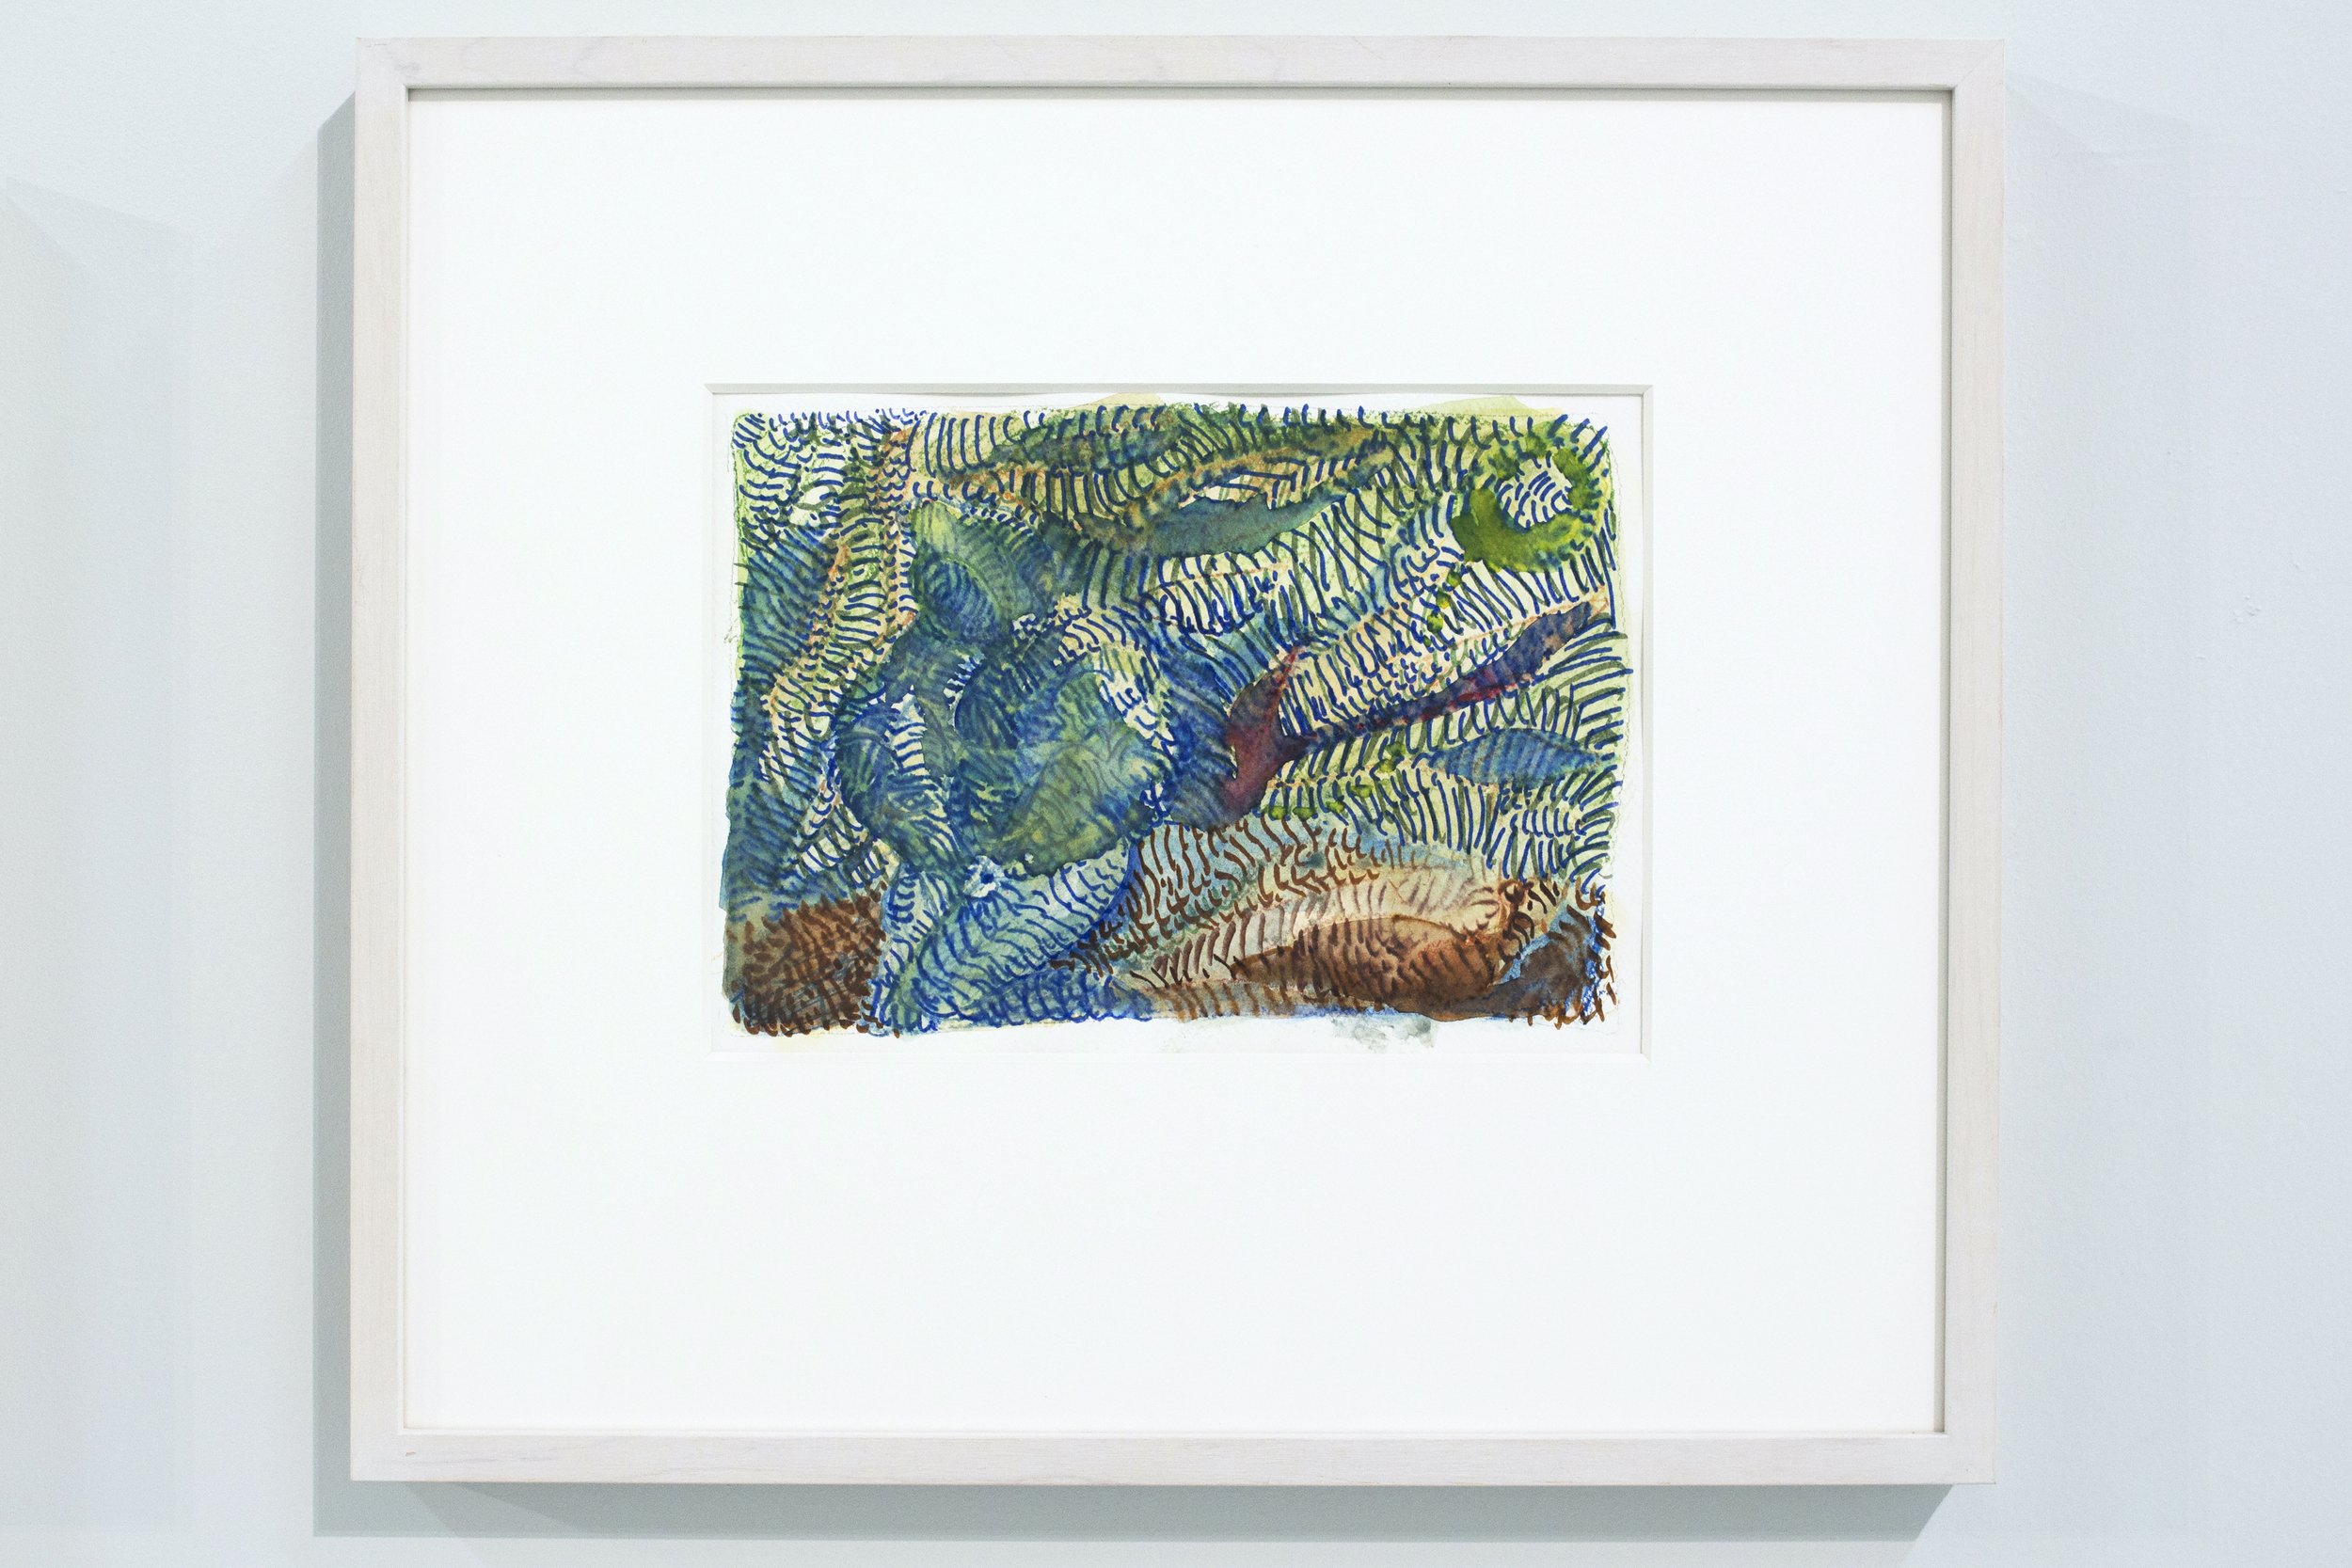   Variation pour un atlas bleu ,  2021, watercolor and marker pen on paper, 38 x 45 cm 